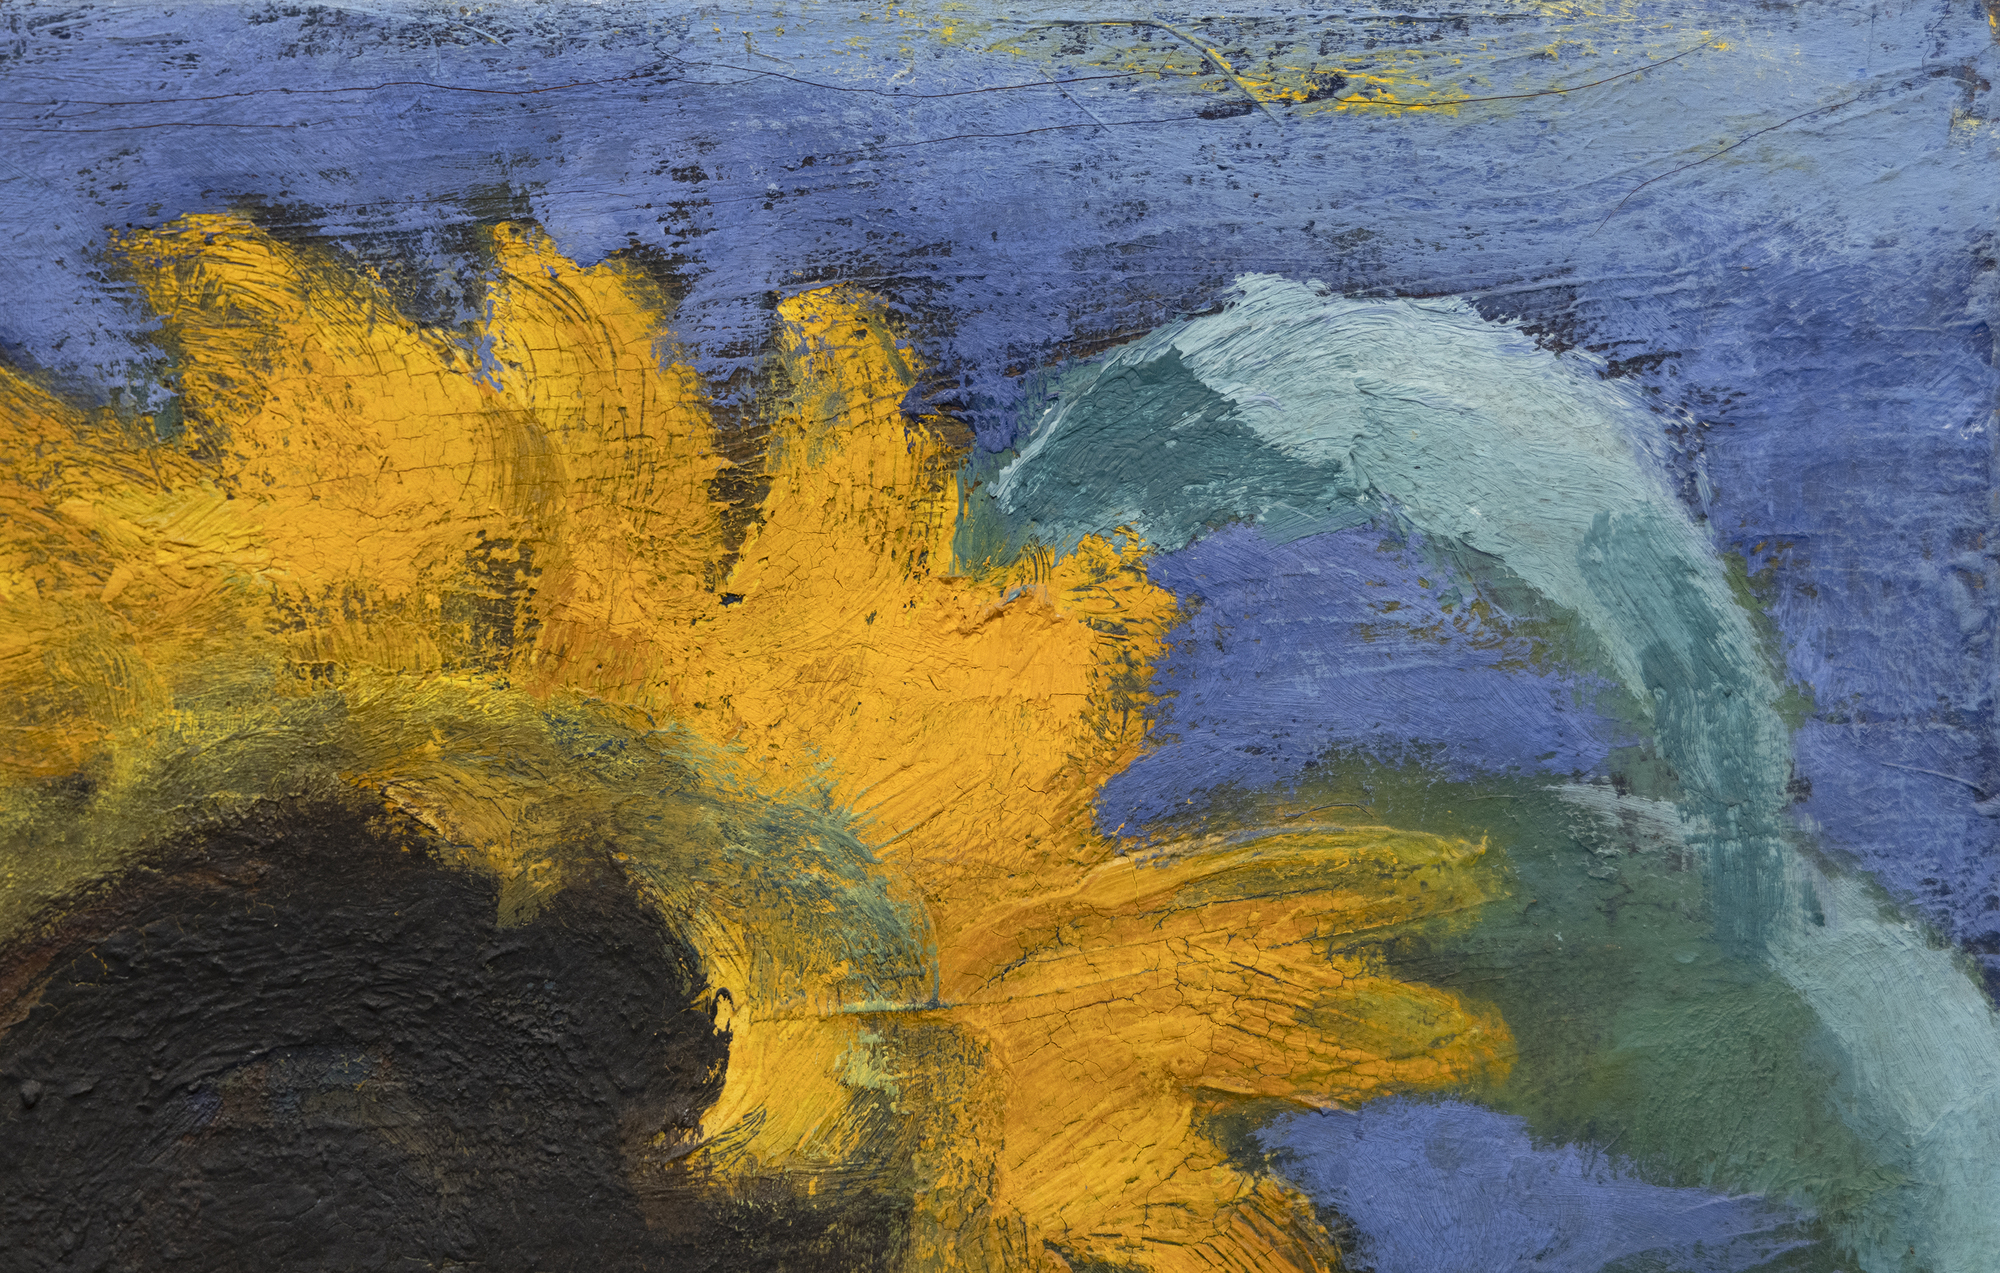 EMIL NOLDE - Sonnenblumen, Abend II - oil on canvas - 26 1/2 x 35 3/8 in.